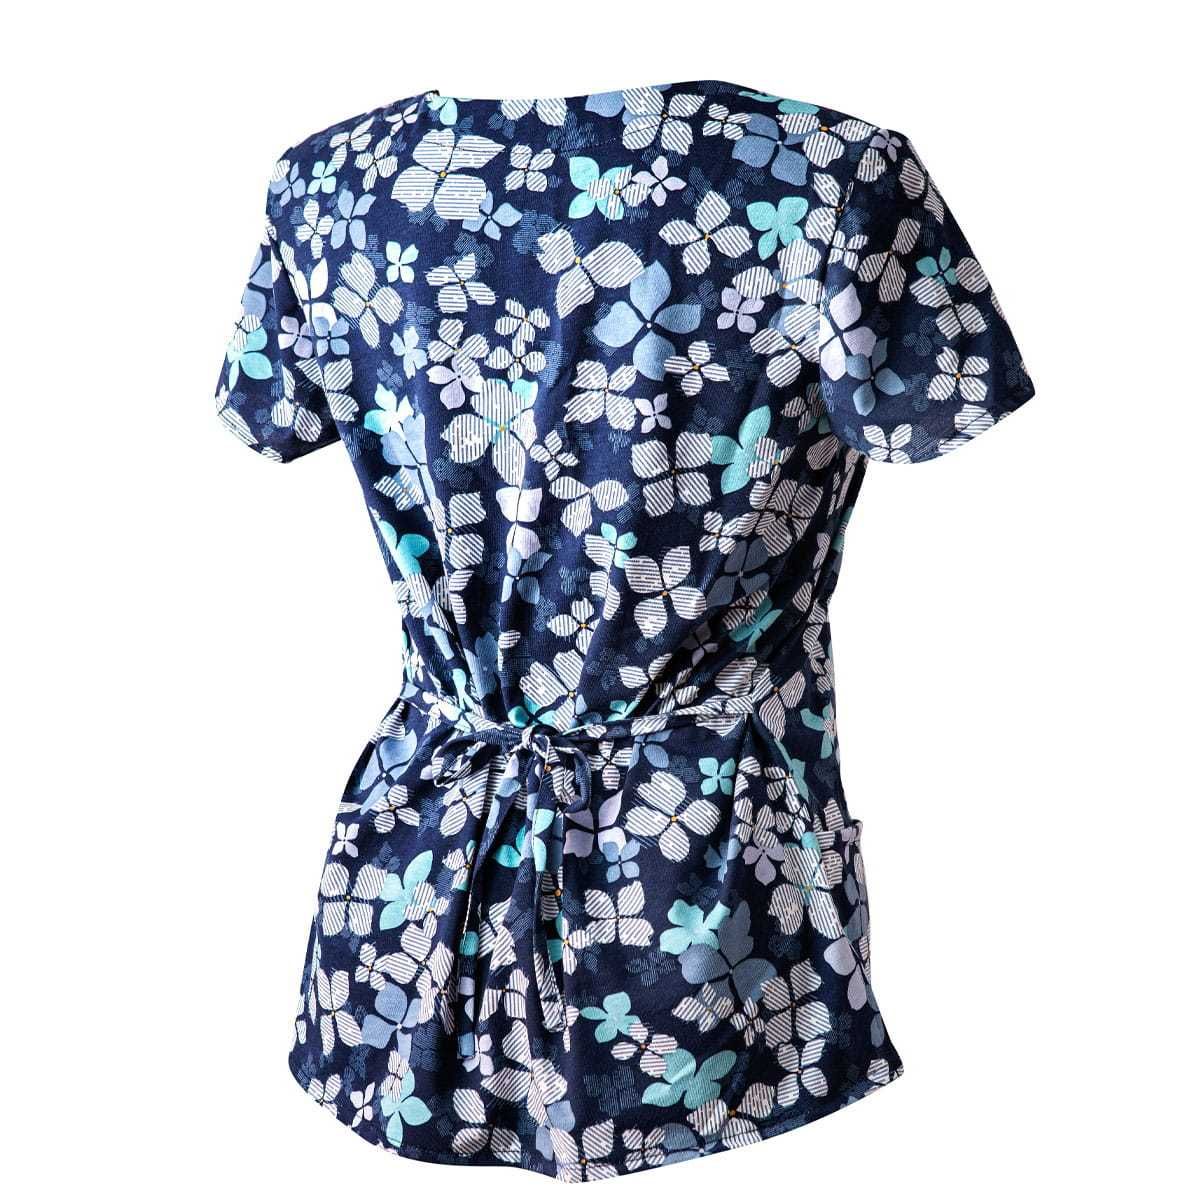 Bluza Medyczna Granatowa Koszulka Bawełniana Kwiaty niebieskie roz 40